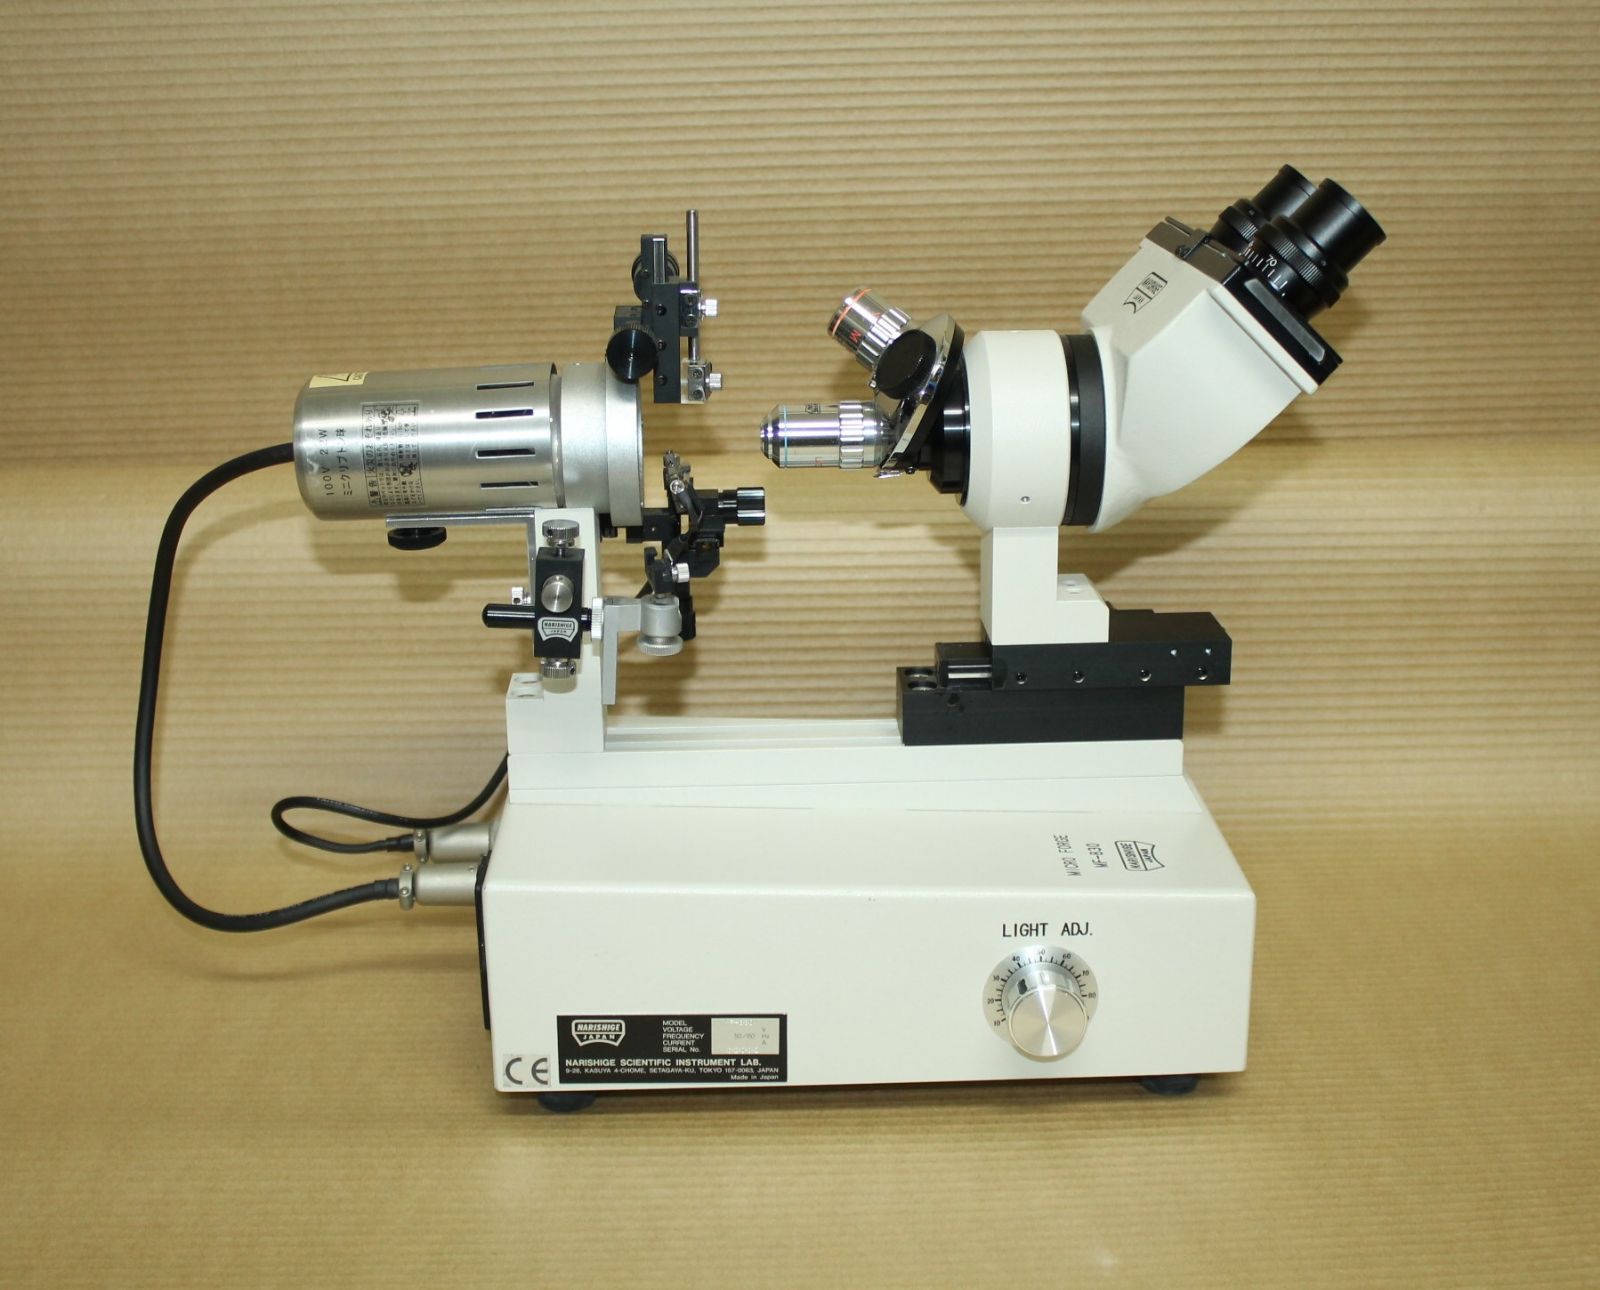 ナリシゲ マイクロフォージ MF900 - カメラ